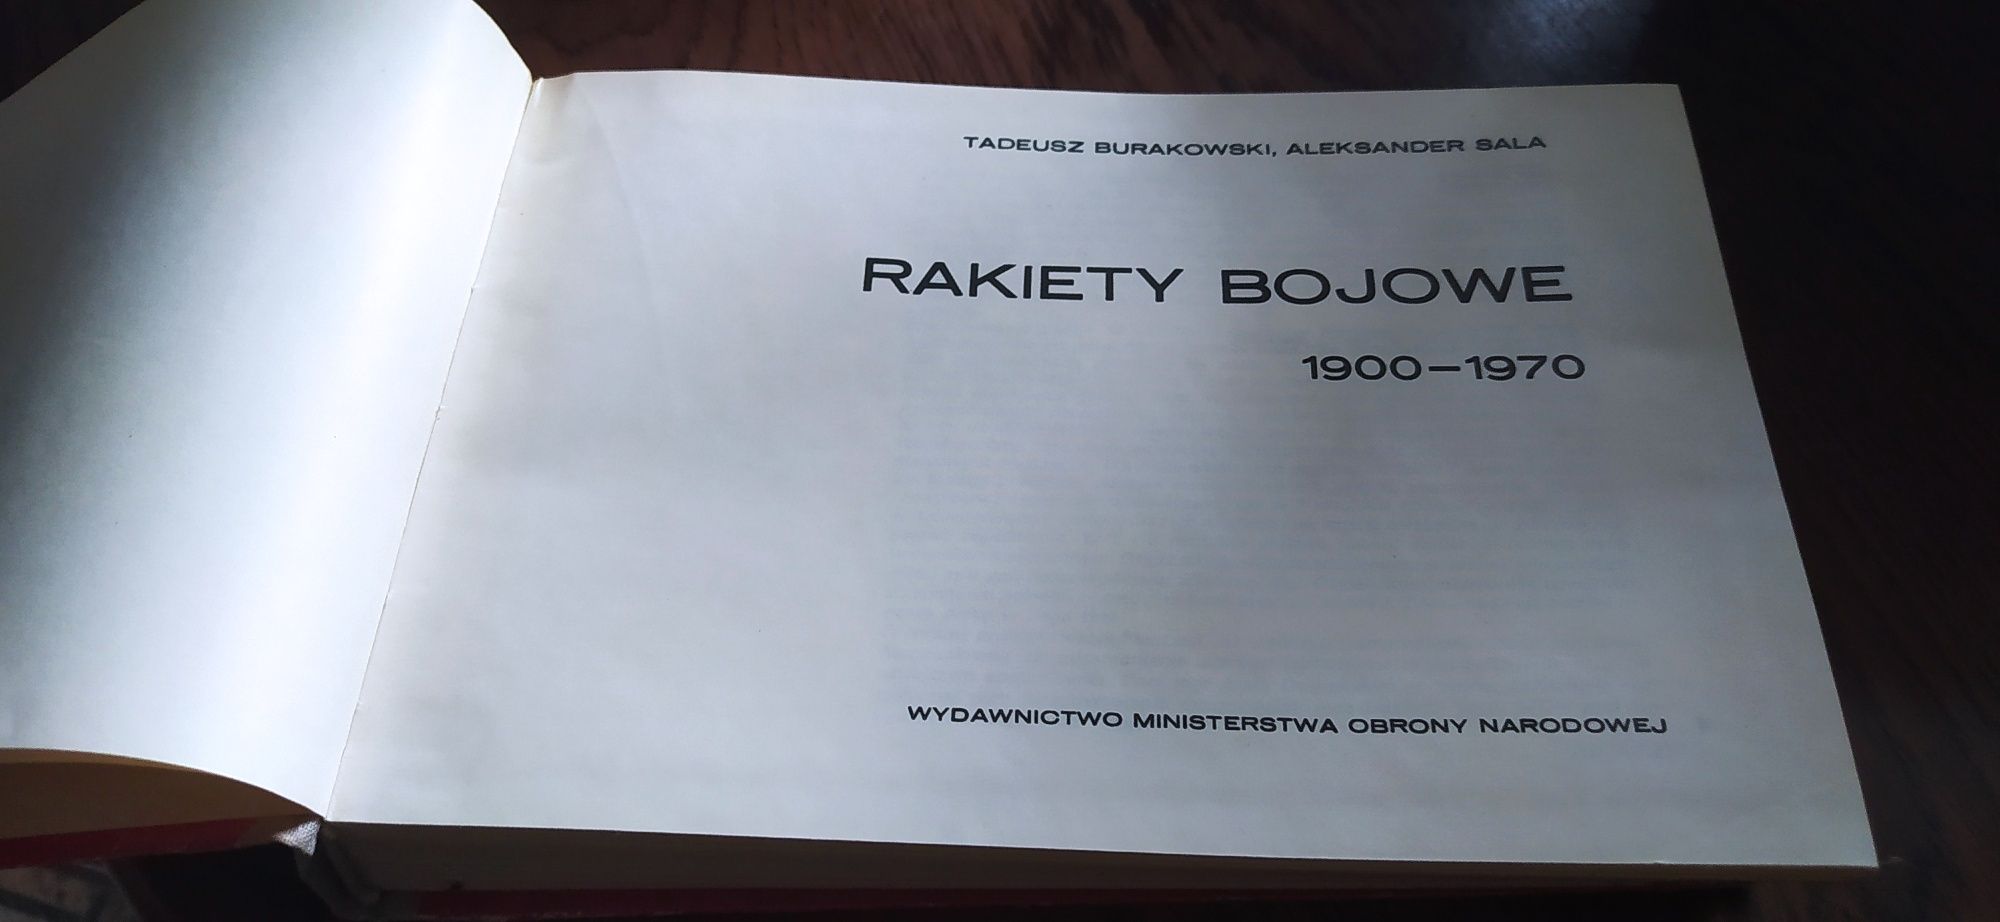 Rakiety Bojowe T. Burakowski wyd. 1